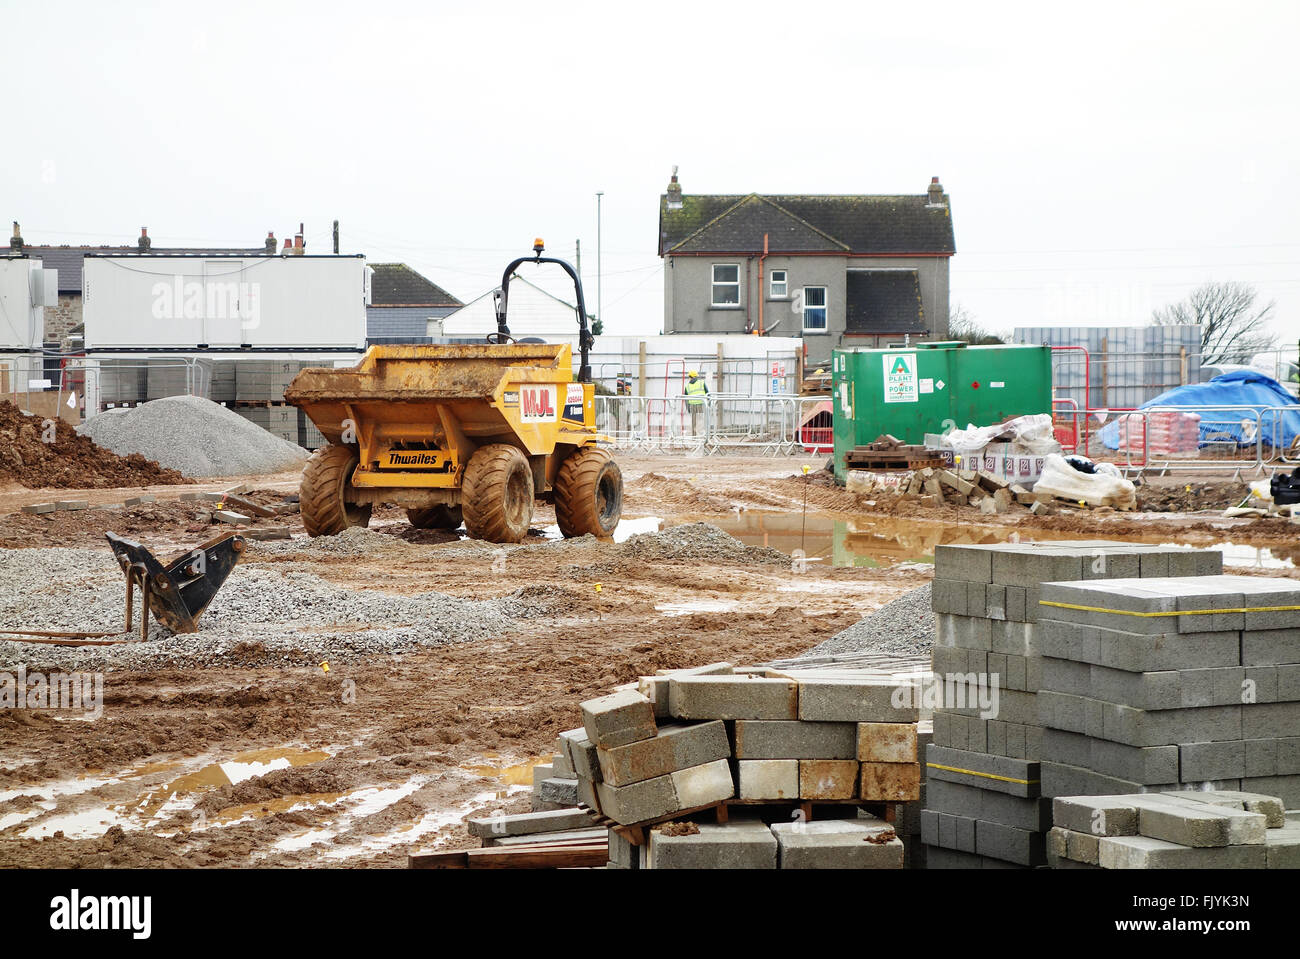 Un site de construction de nouveaux logements abordables à Redruth à Cornwall, England, UK Banque D'Images